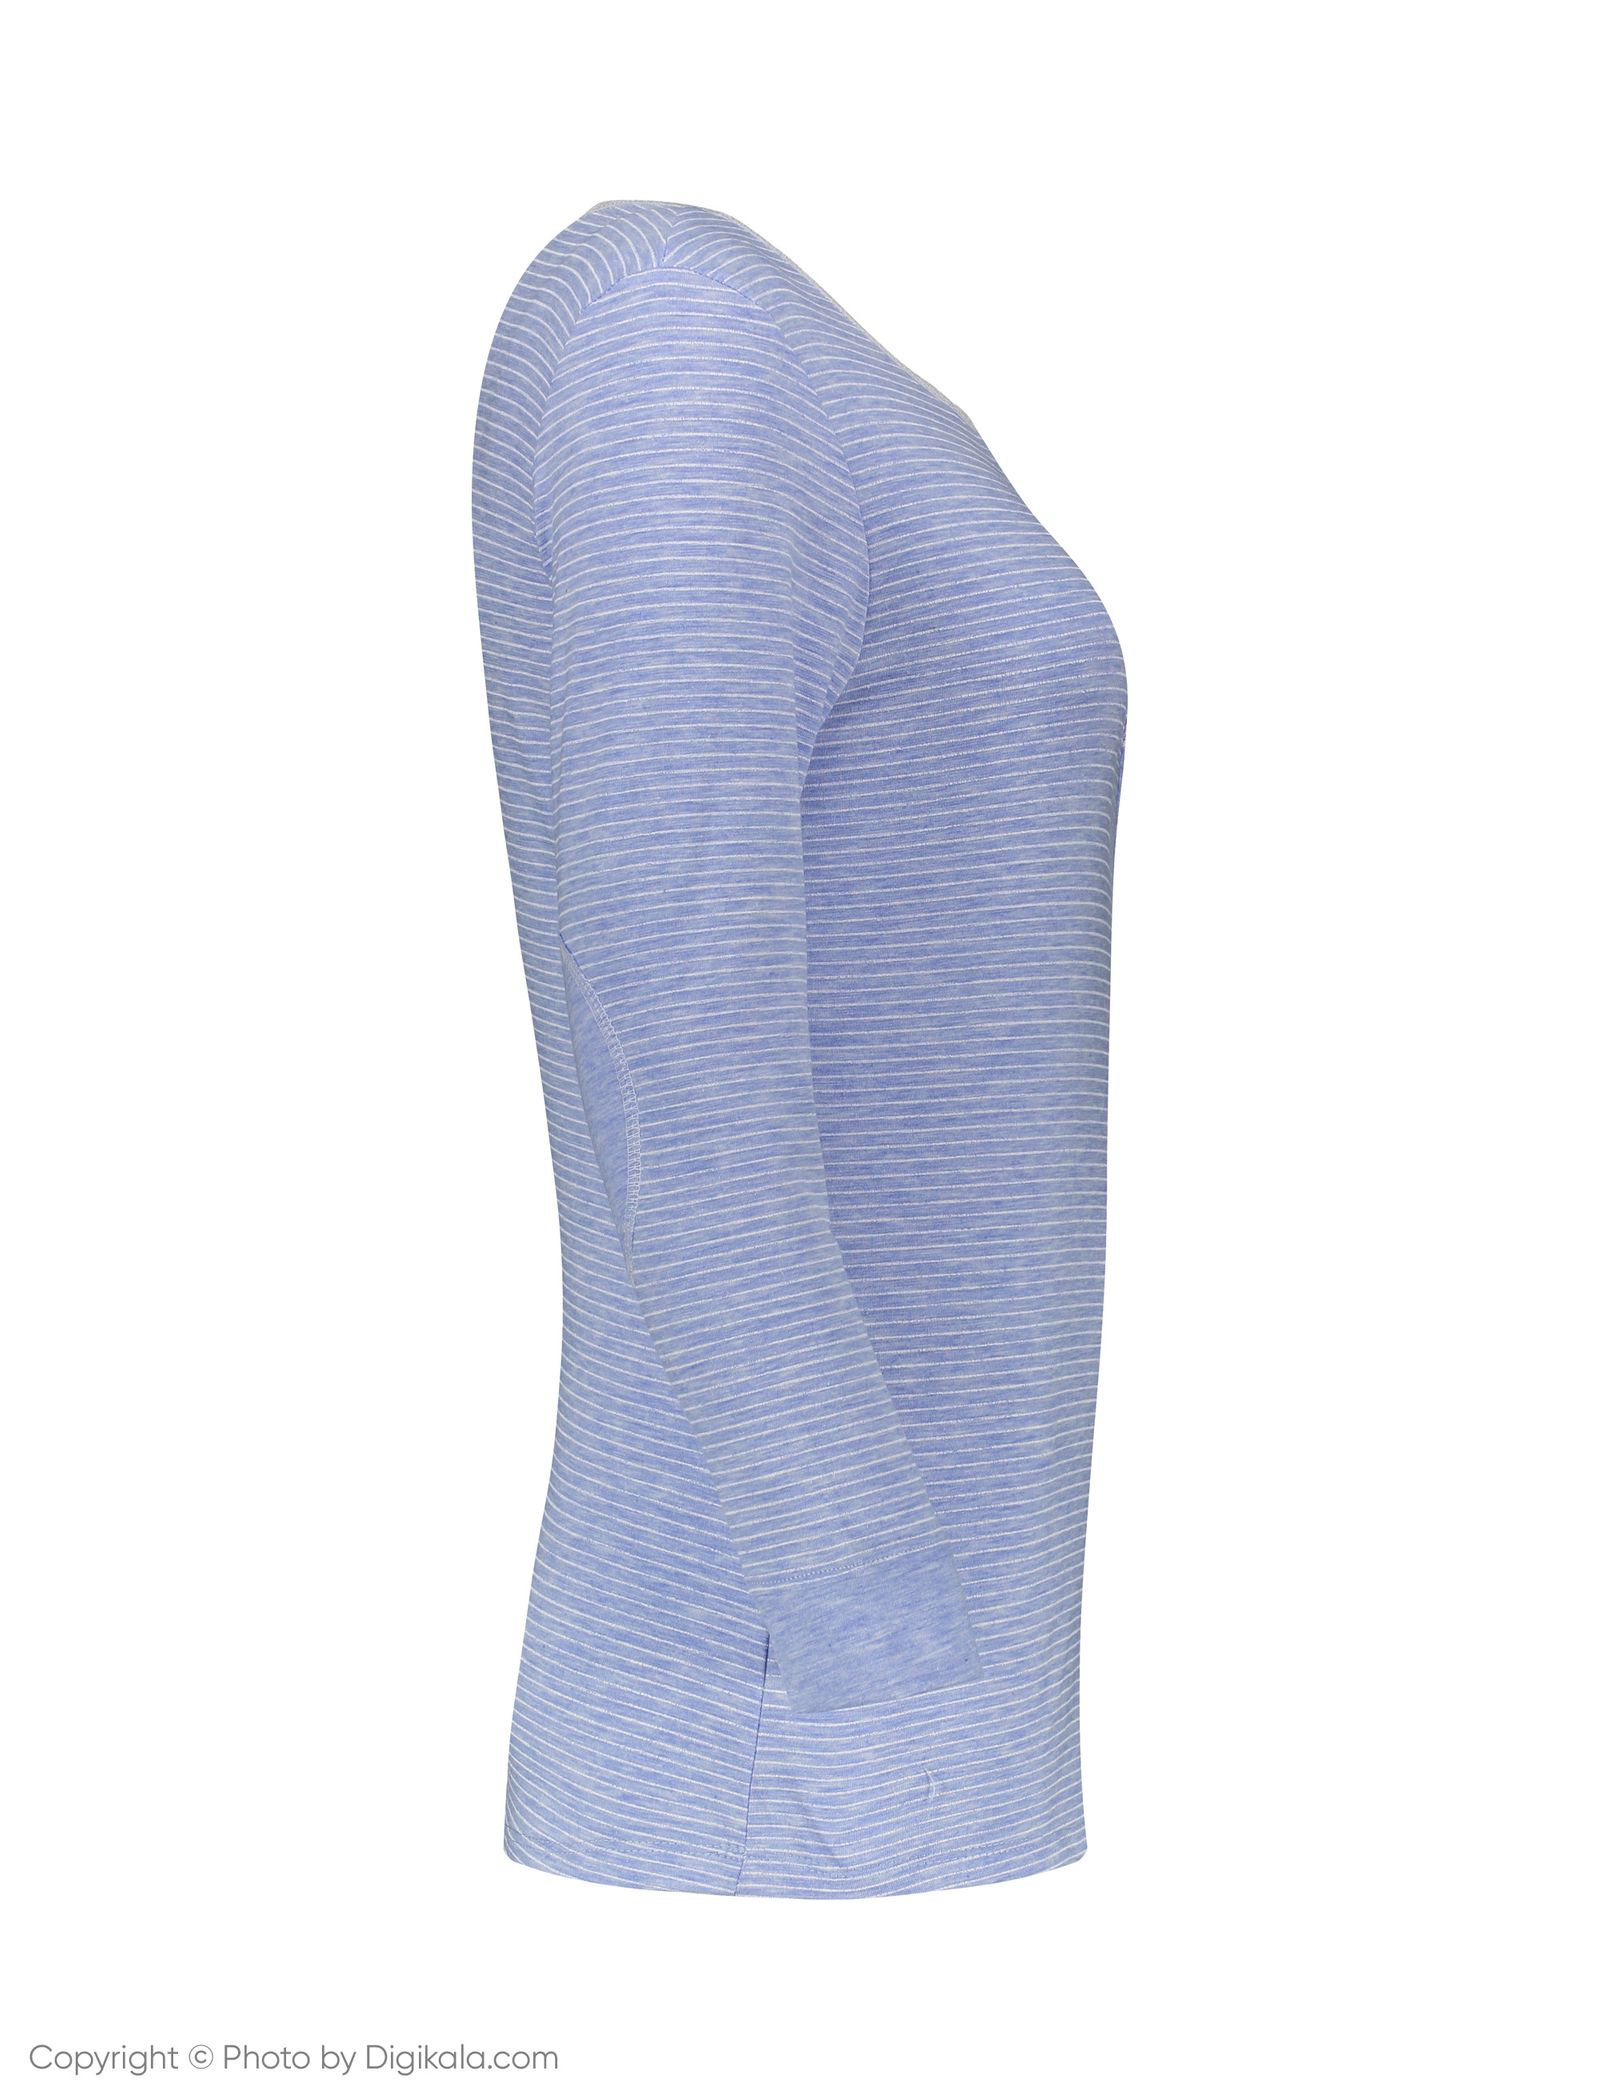 ست تی شرت و شلوار راحتی زنانه ناربن مدل 1521154-51 - آبی آسمانی - 4